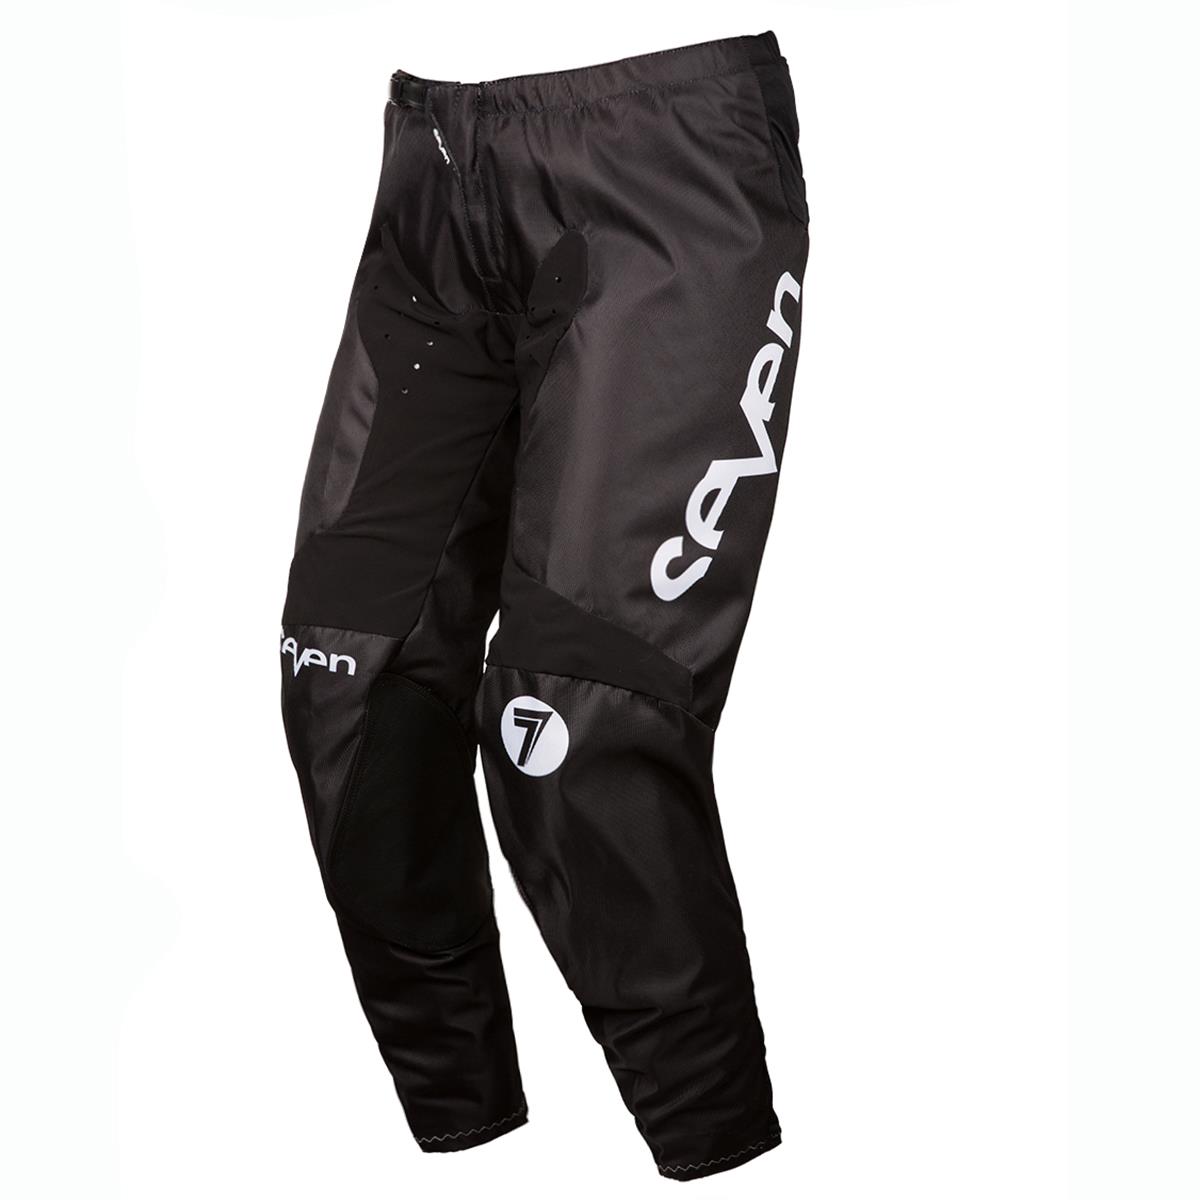 Seven MX MX Pants Annex Staple Black/White